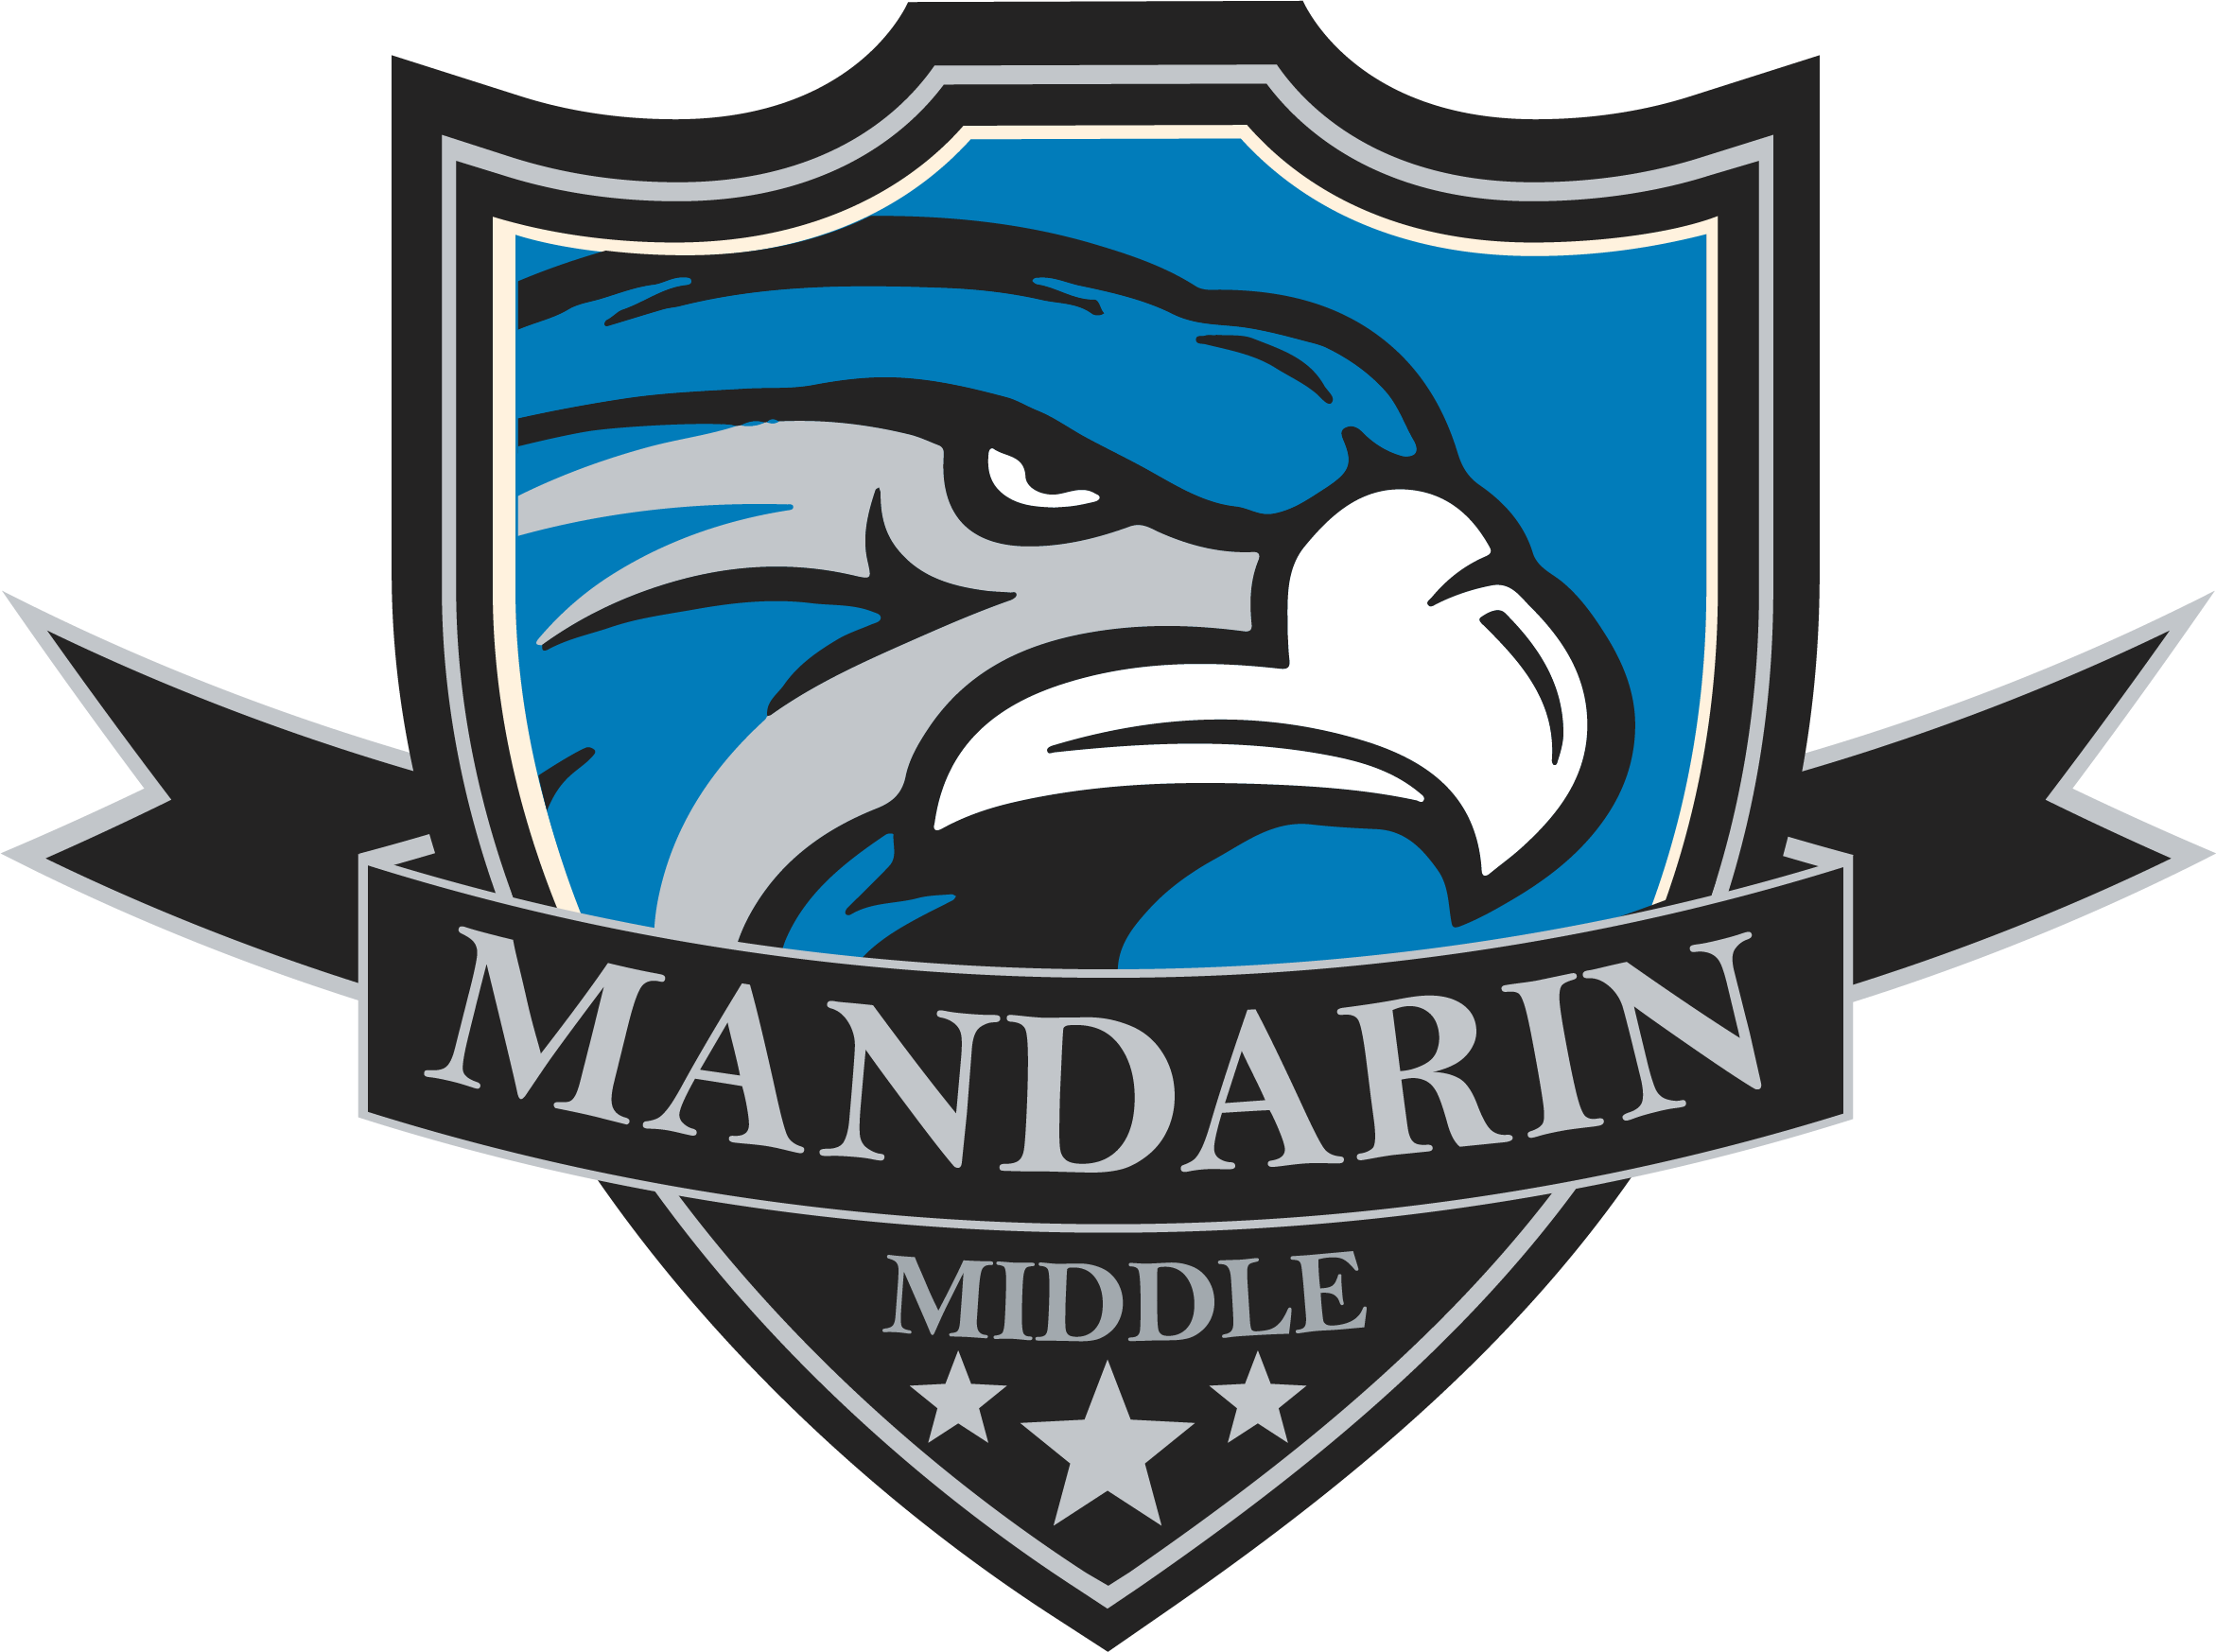 Mandarin Middle School - Mandarin Middle School Logo (2343x1747)